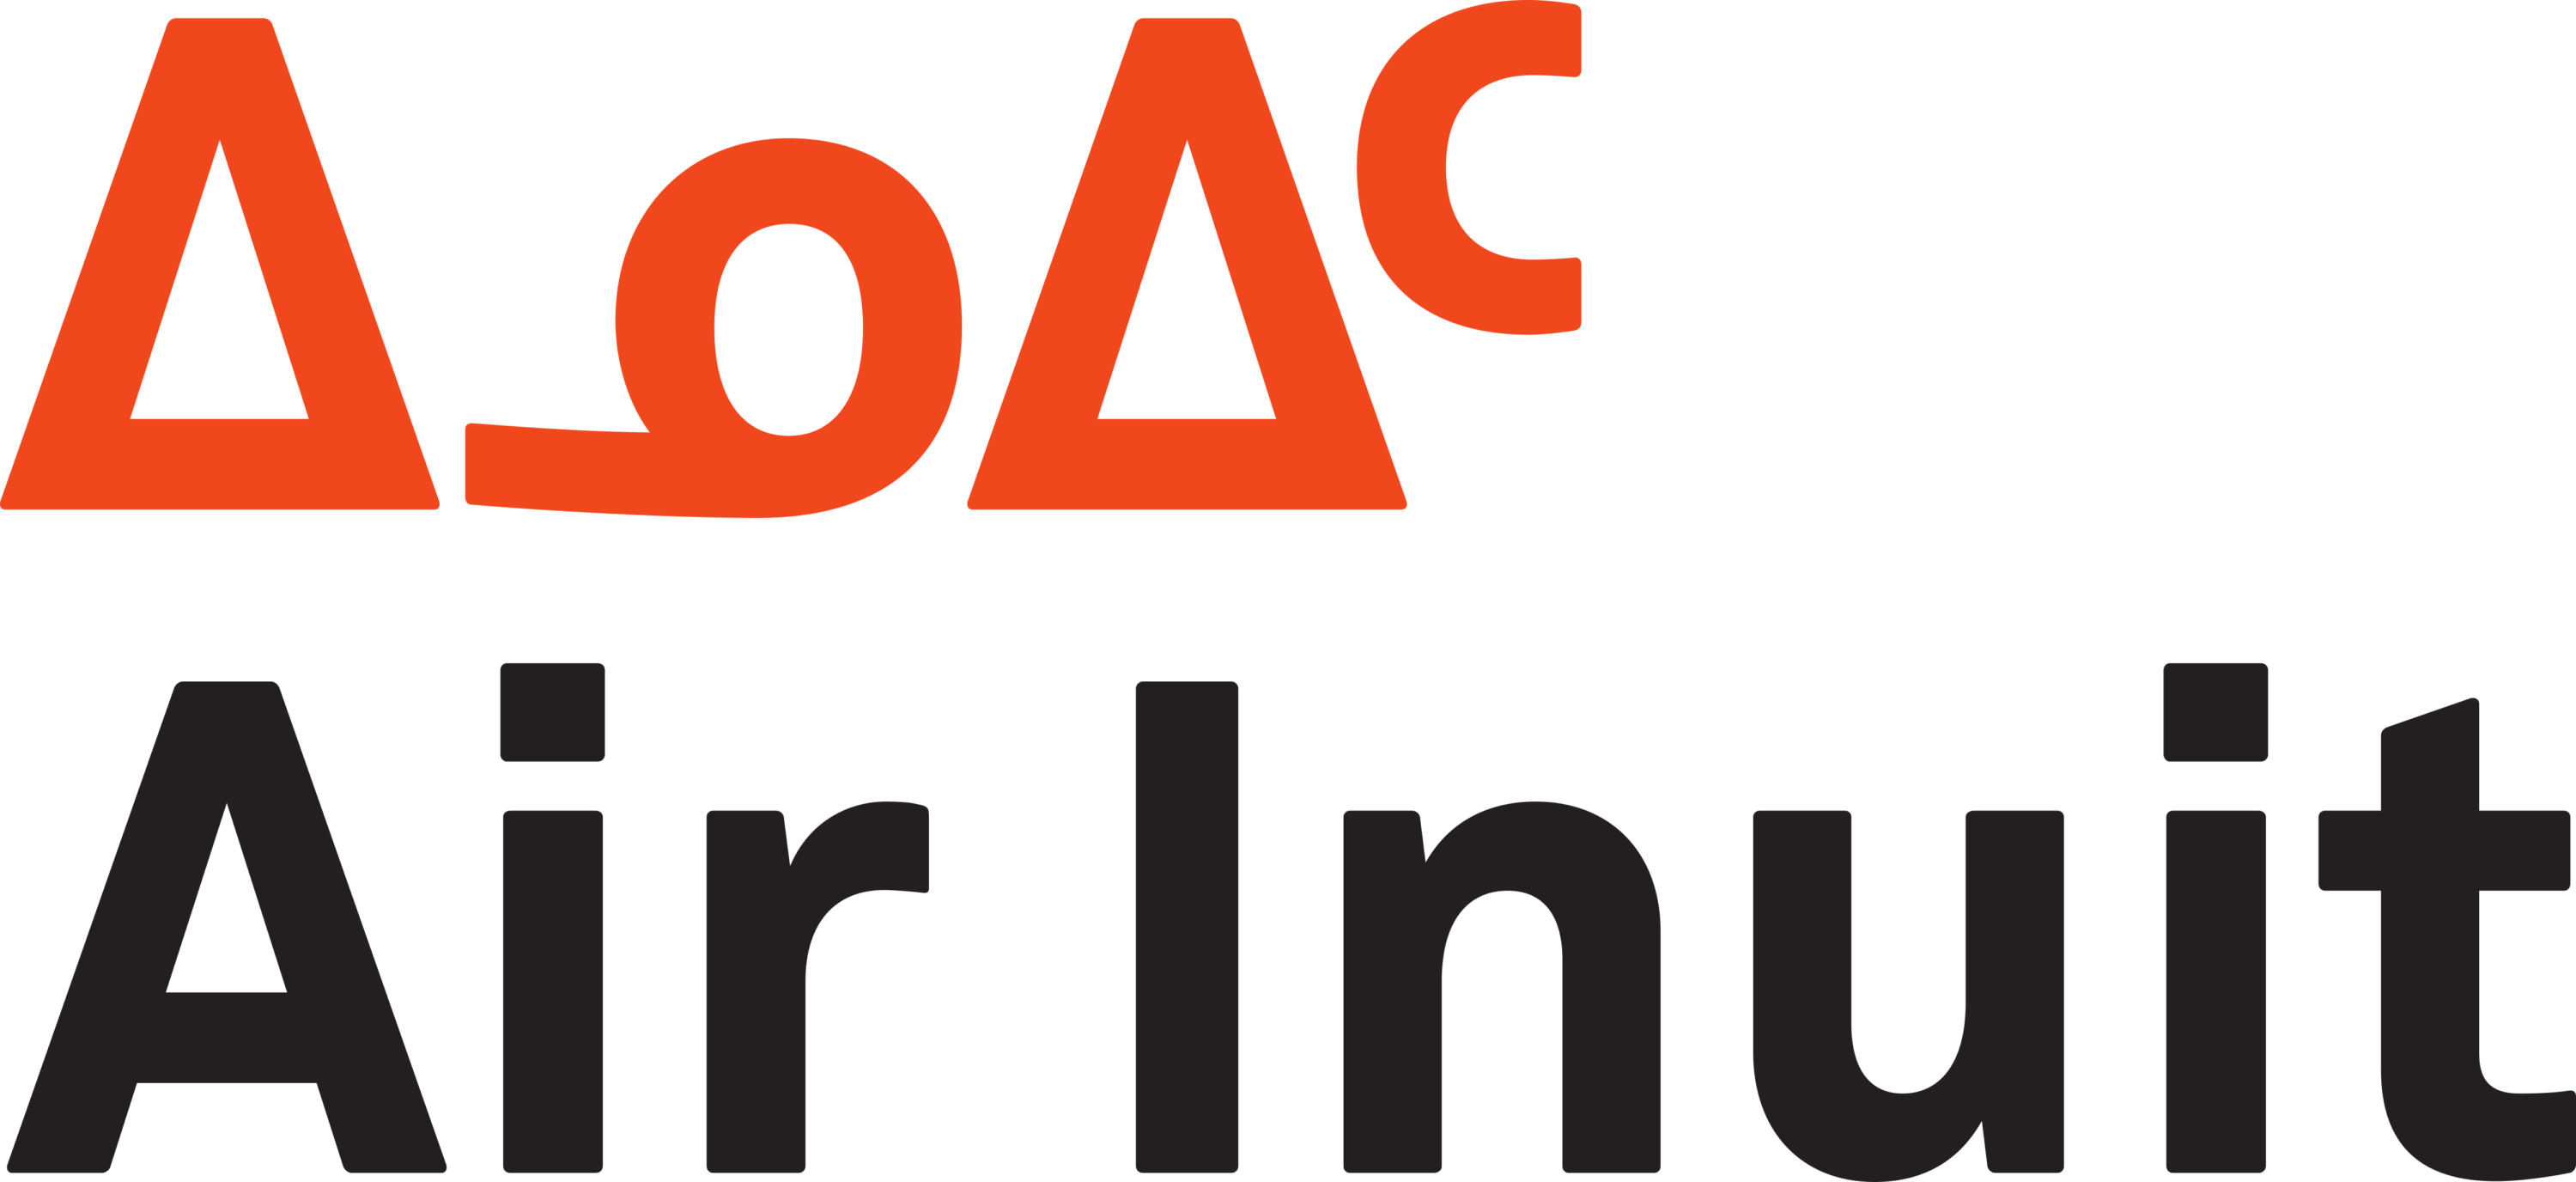 Air Inuit Logo